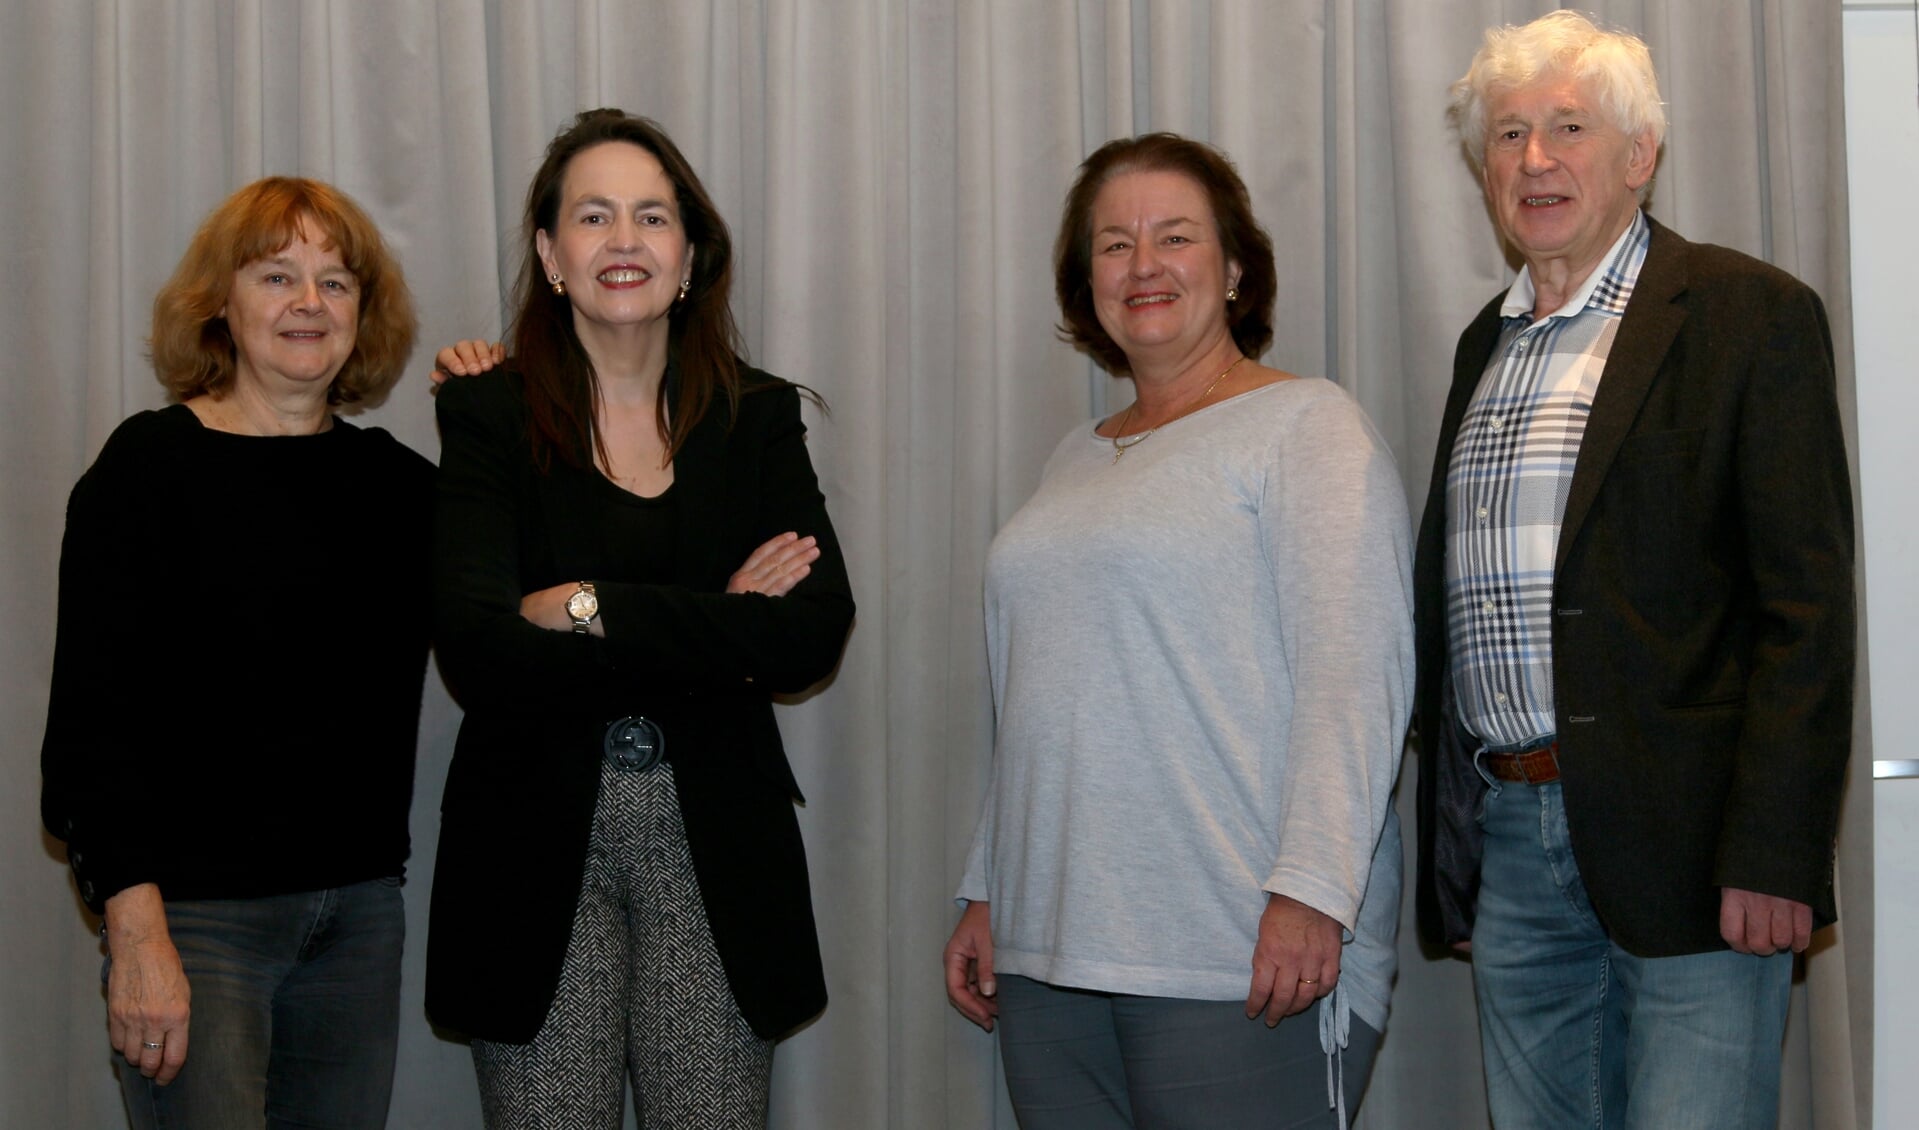 Emile van Lent met Els Groosjohan, Karen van de Lande en Adri Grift.